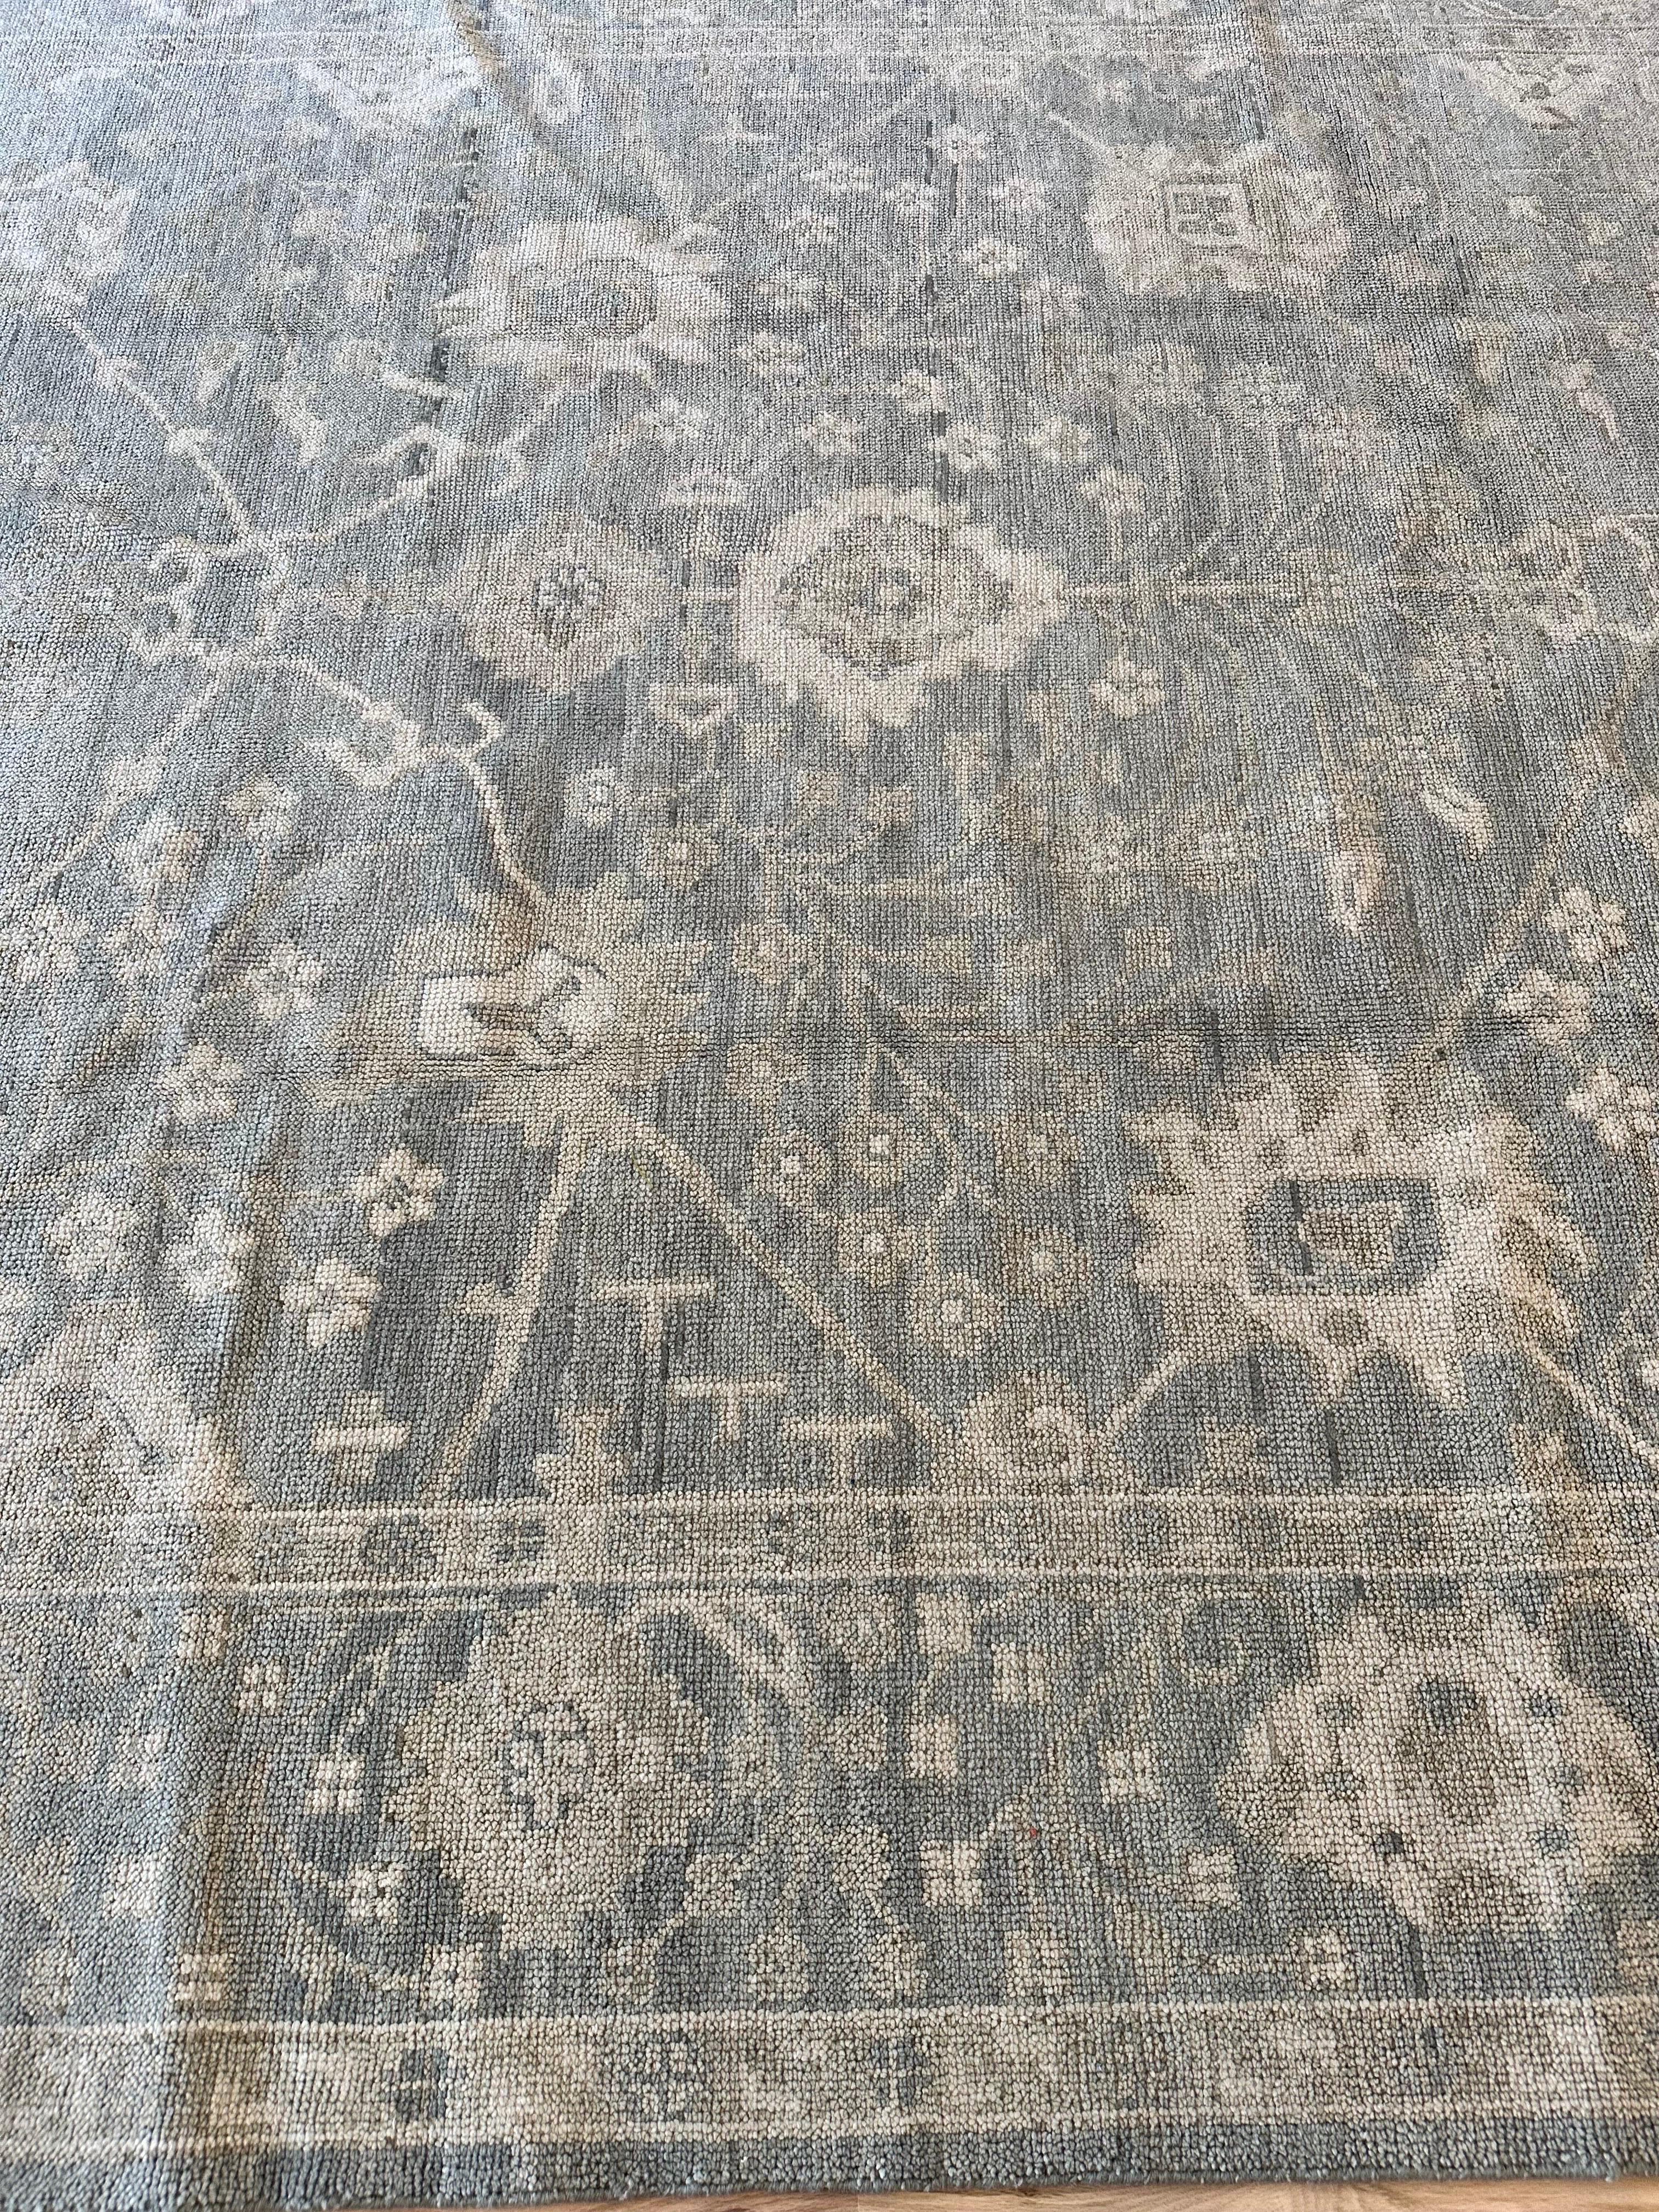 Vintage Oushak Carpet, Oriental Rug, Handmade Green Grey, Ivory, Saffron For Sale 4